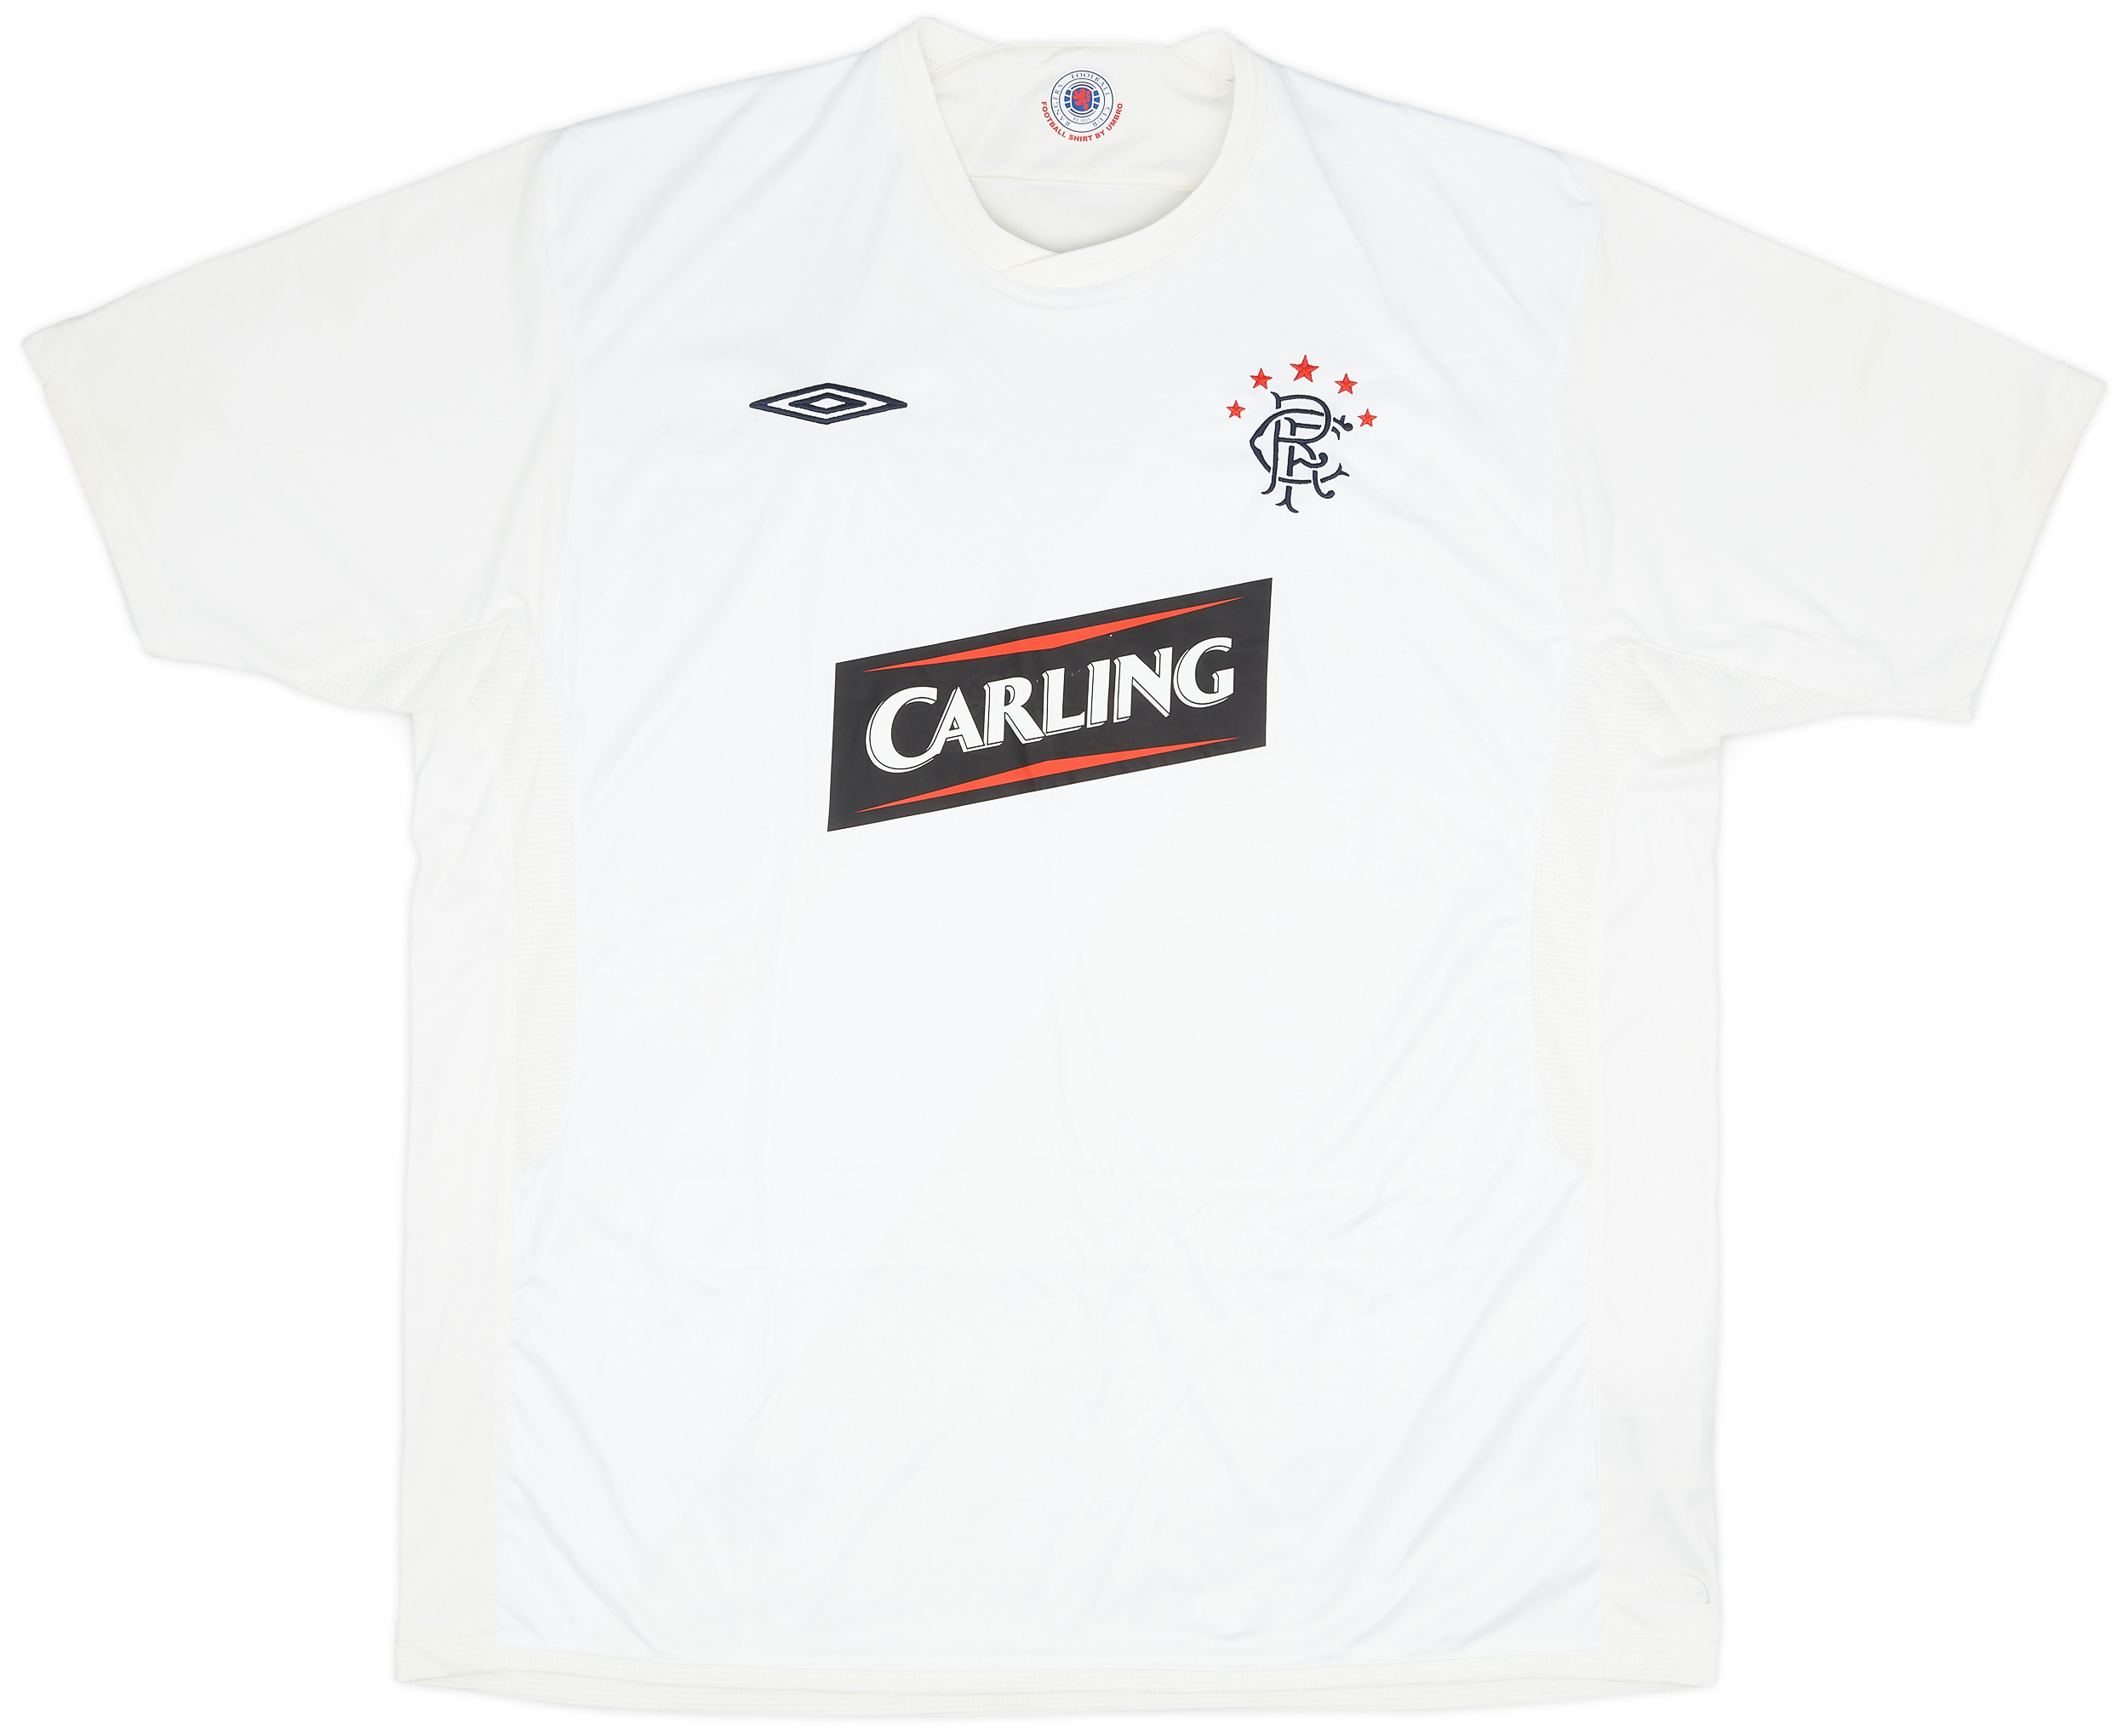 2009-10 Rangers Third Shirt - 8/10 - ()